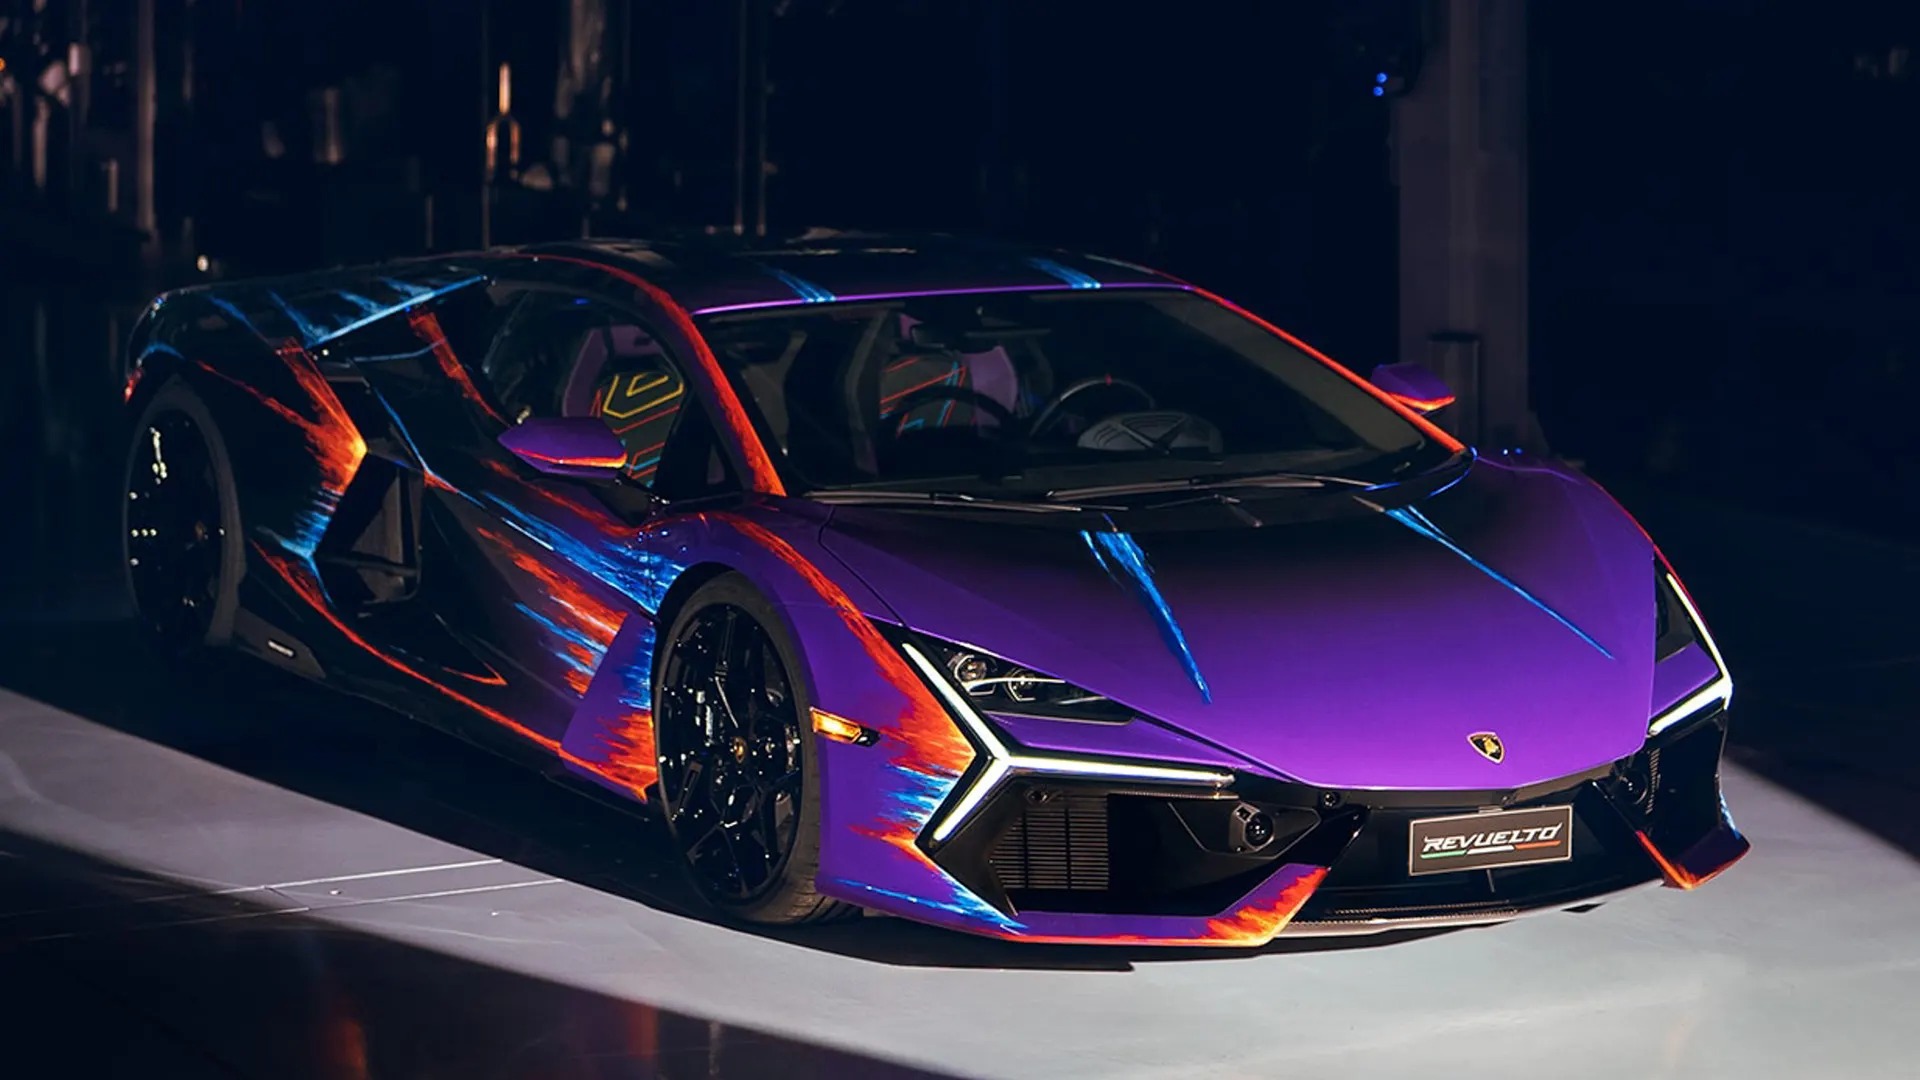 Chiếc Lamborghini Revuelto ‘tốn công tốn sức’ nhất là đây: Mất 435 tiếng sơn thủ công, 220 tiếng độ nội thất- Ảnh 2.